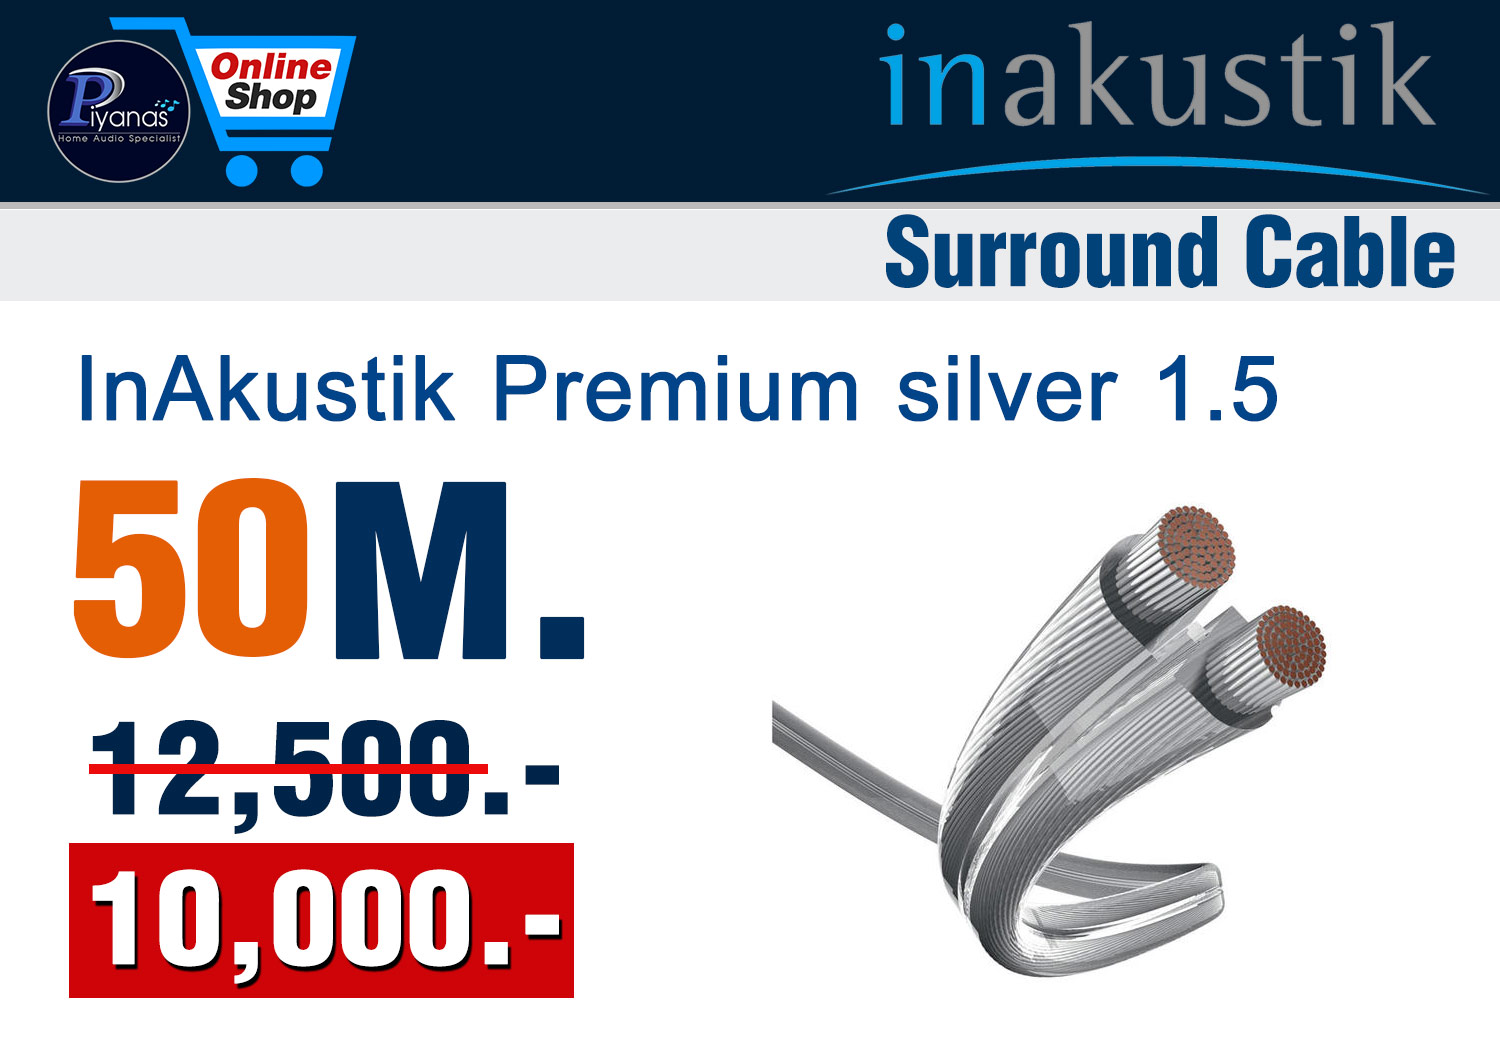 Monitor Premium silver 1.5 (50M.)